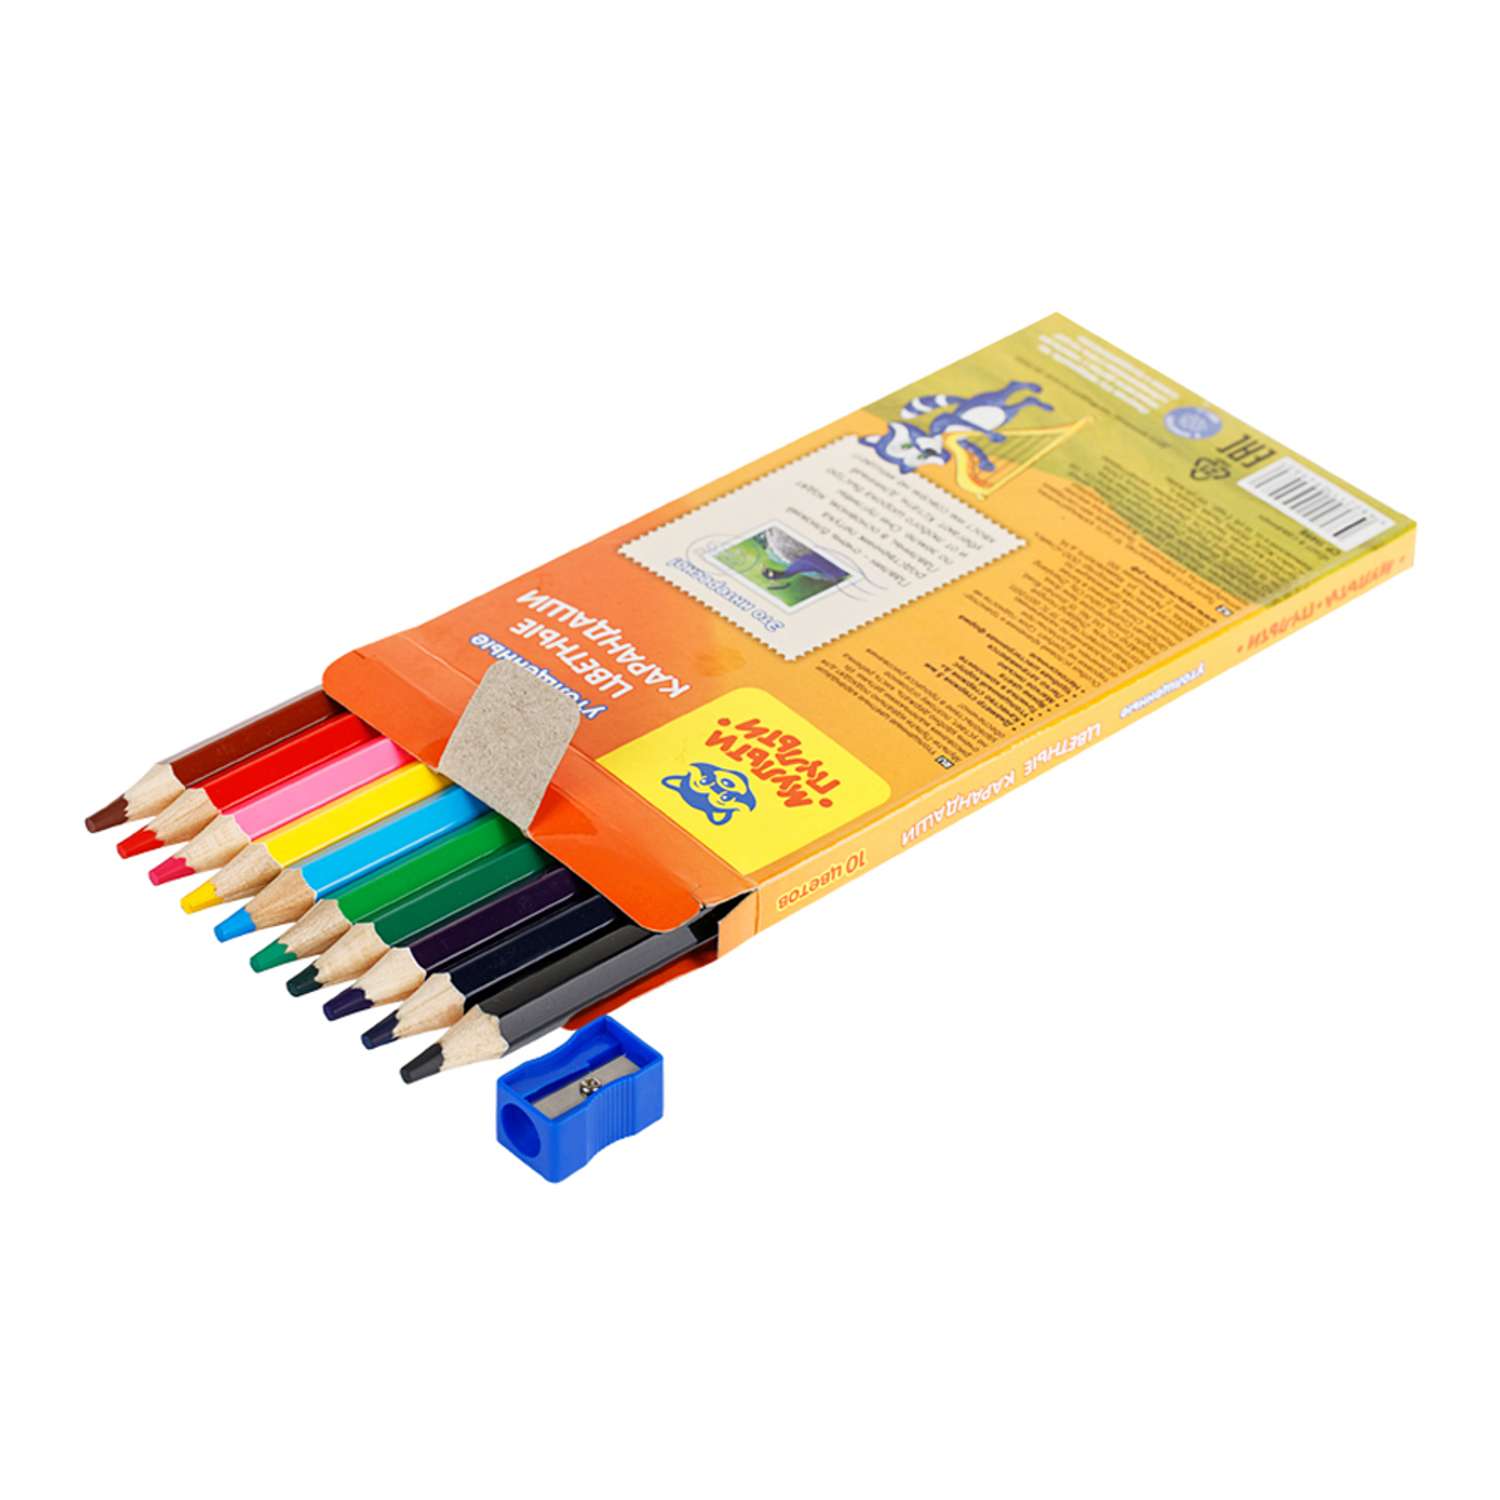 Мульти карандаш. Карандаш Мульти Пульти с разноцветным грифелем. Карандаши цветные, 10 цветов. Енот цветными карандашами.